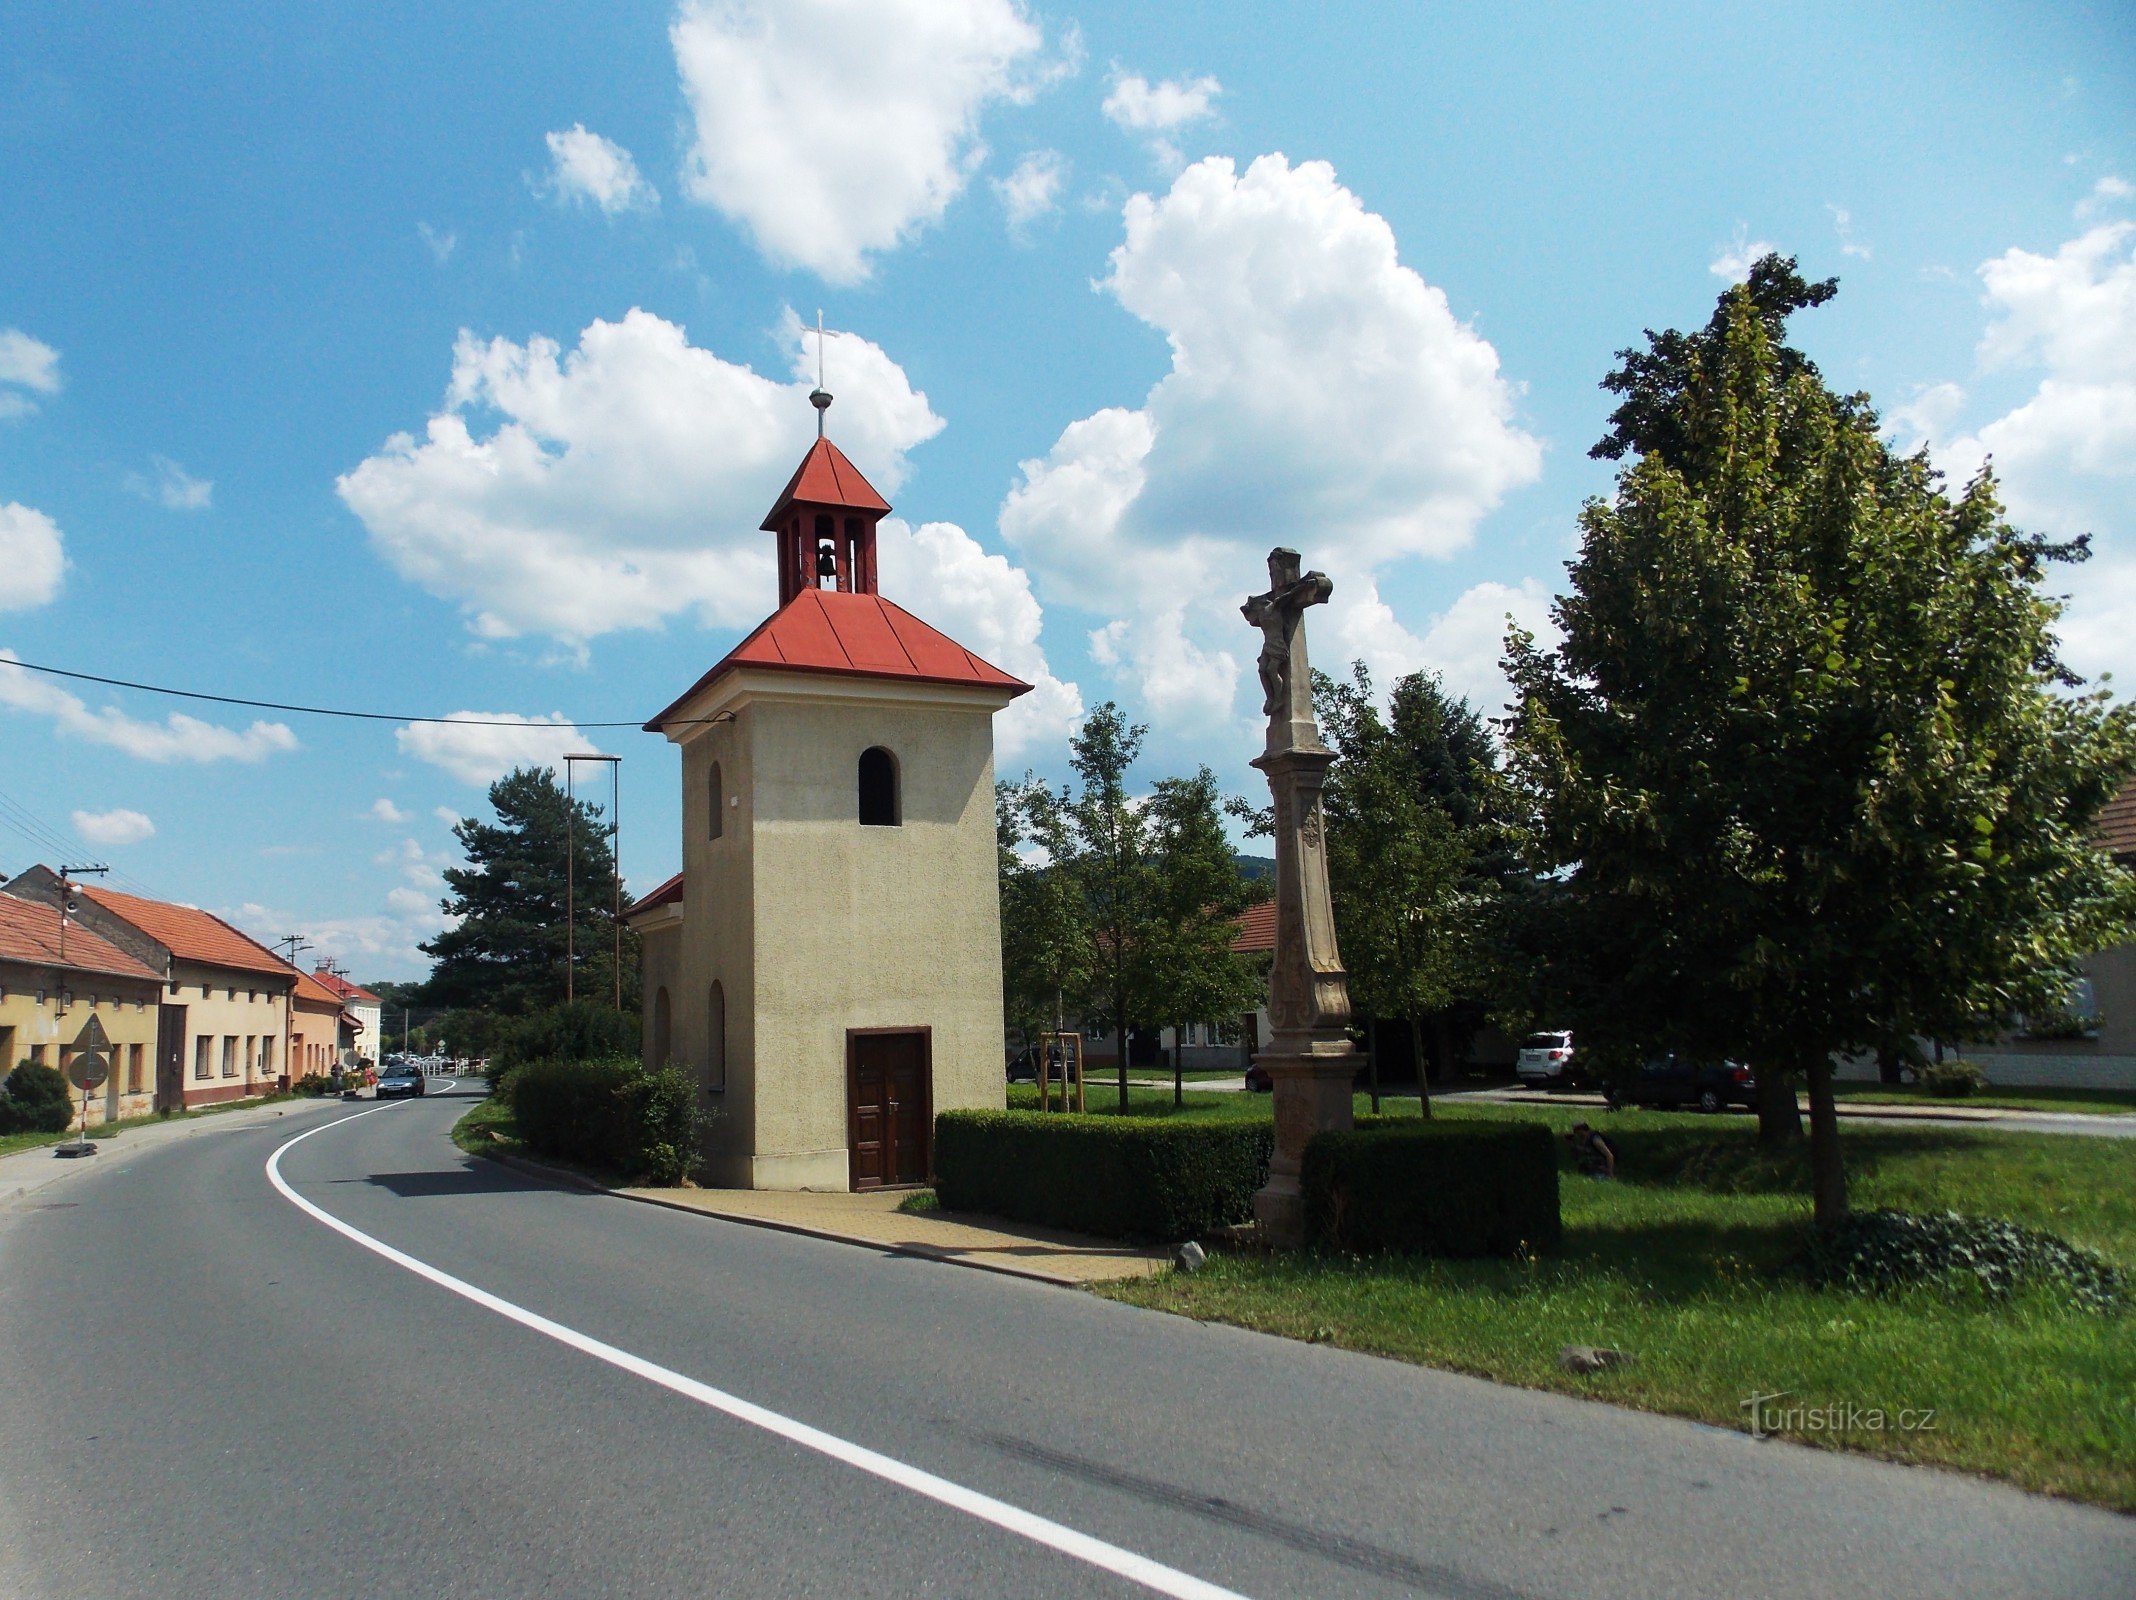 Chapel in the village in Louky